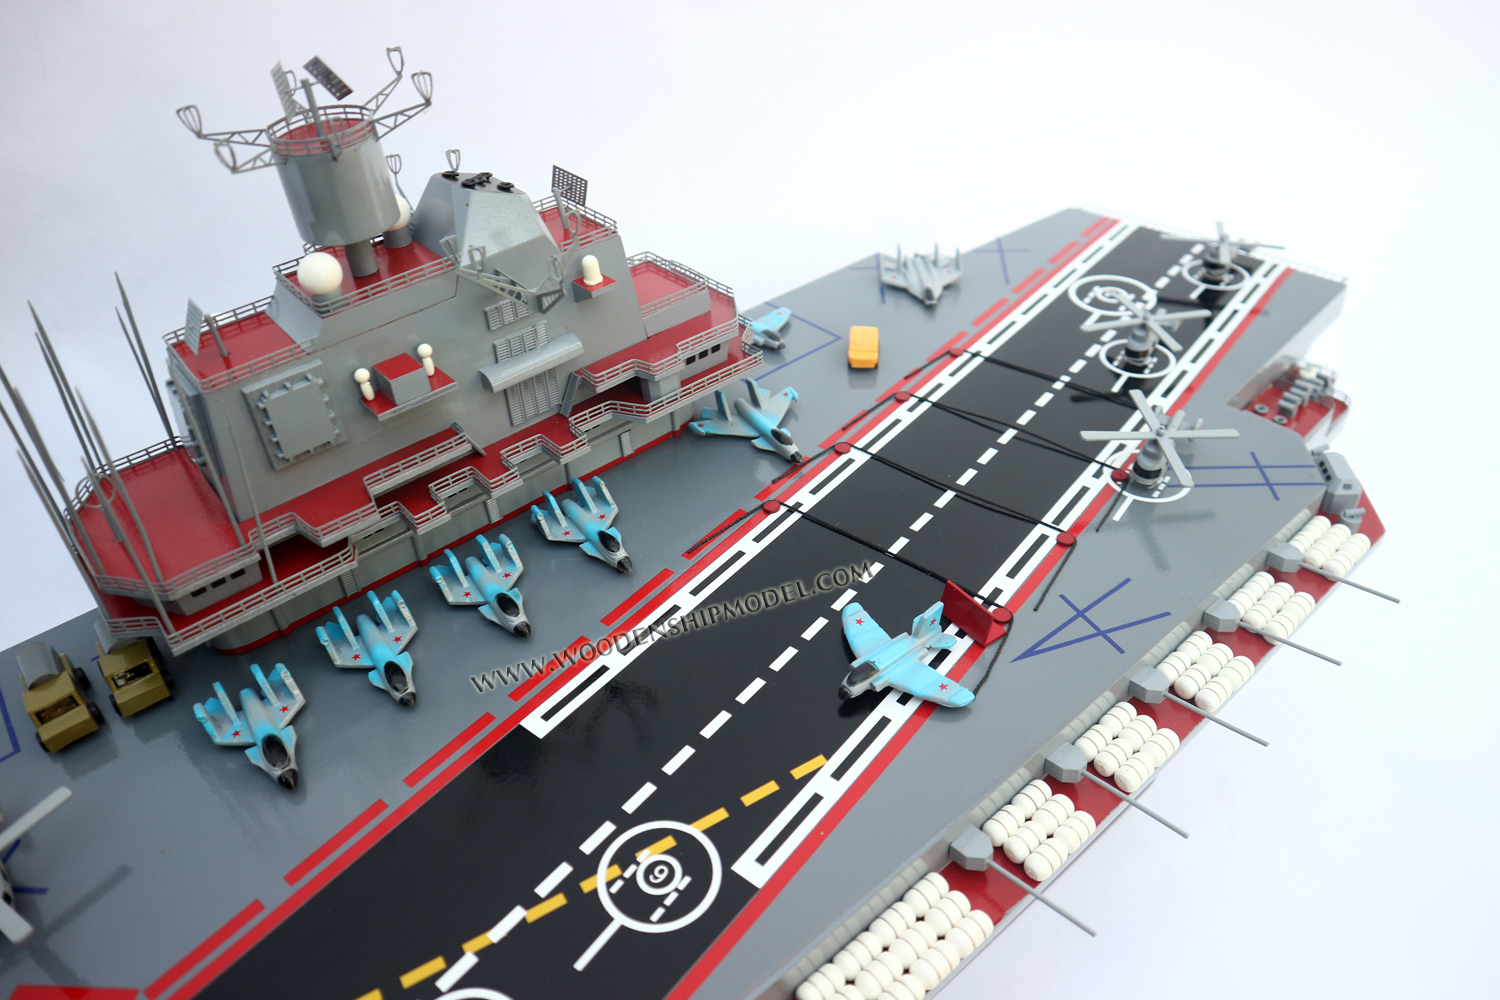 Handcrafted Admiral Kuznetsov aircraft carrier War Ship Model